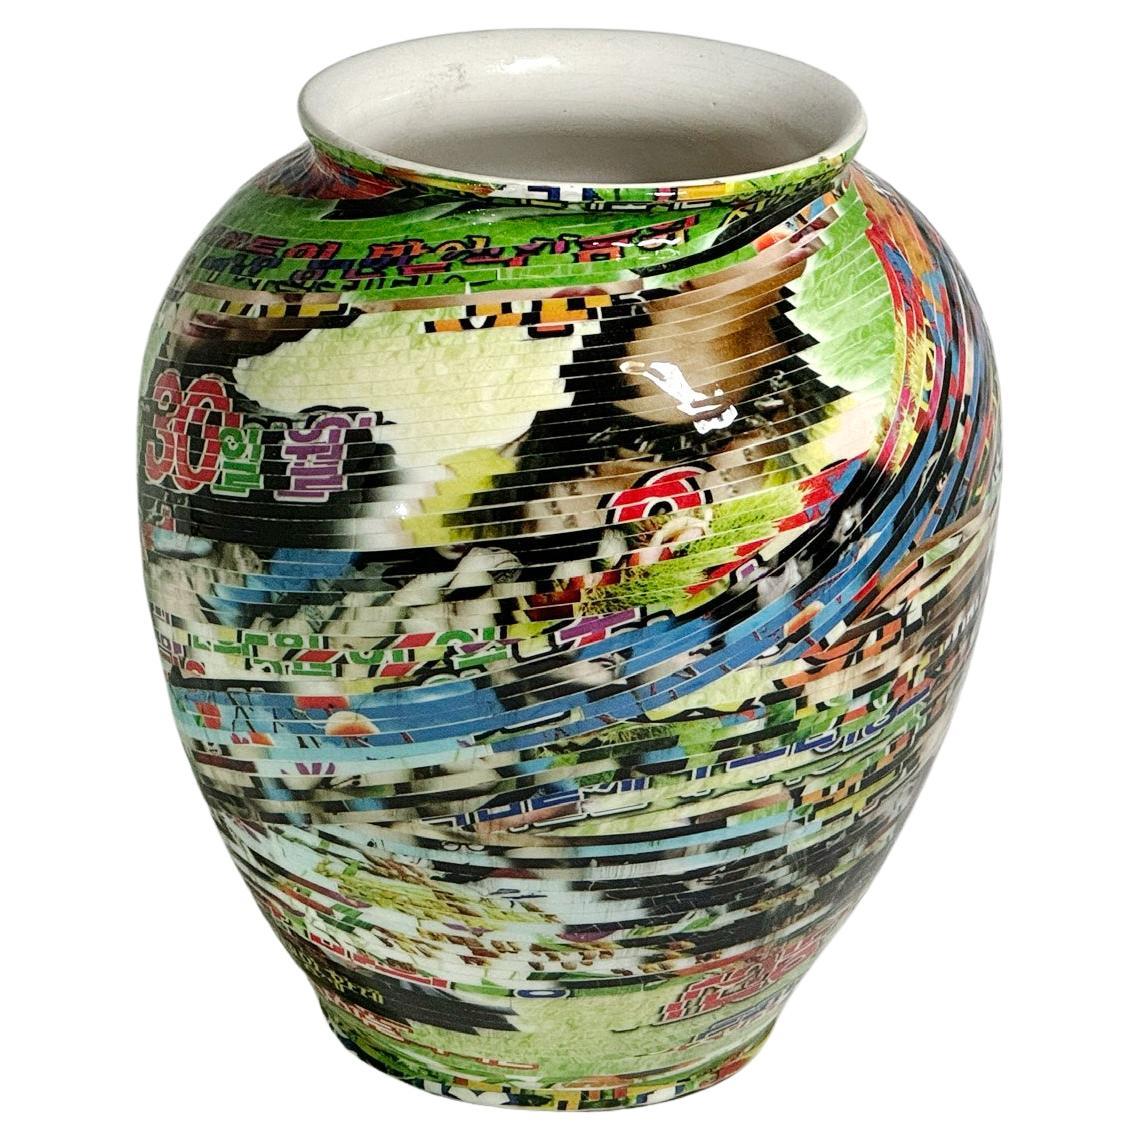 Jjirasi-Vase #01. Aus der Serie Jjirasi 